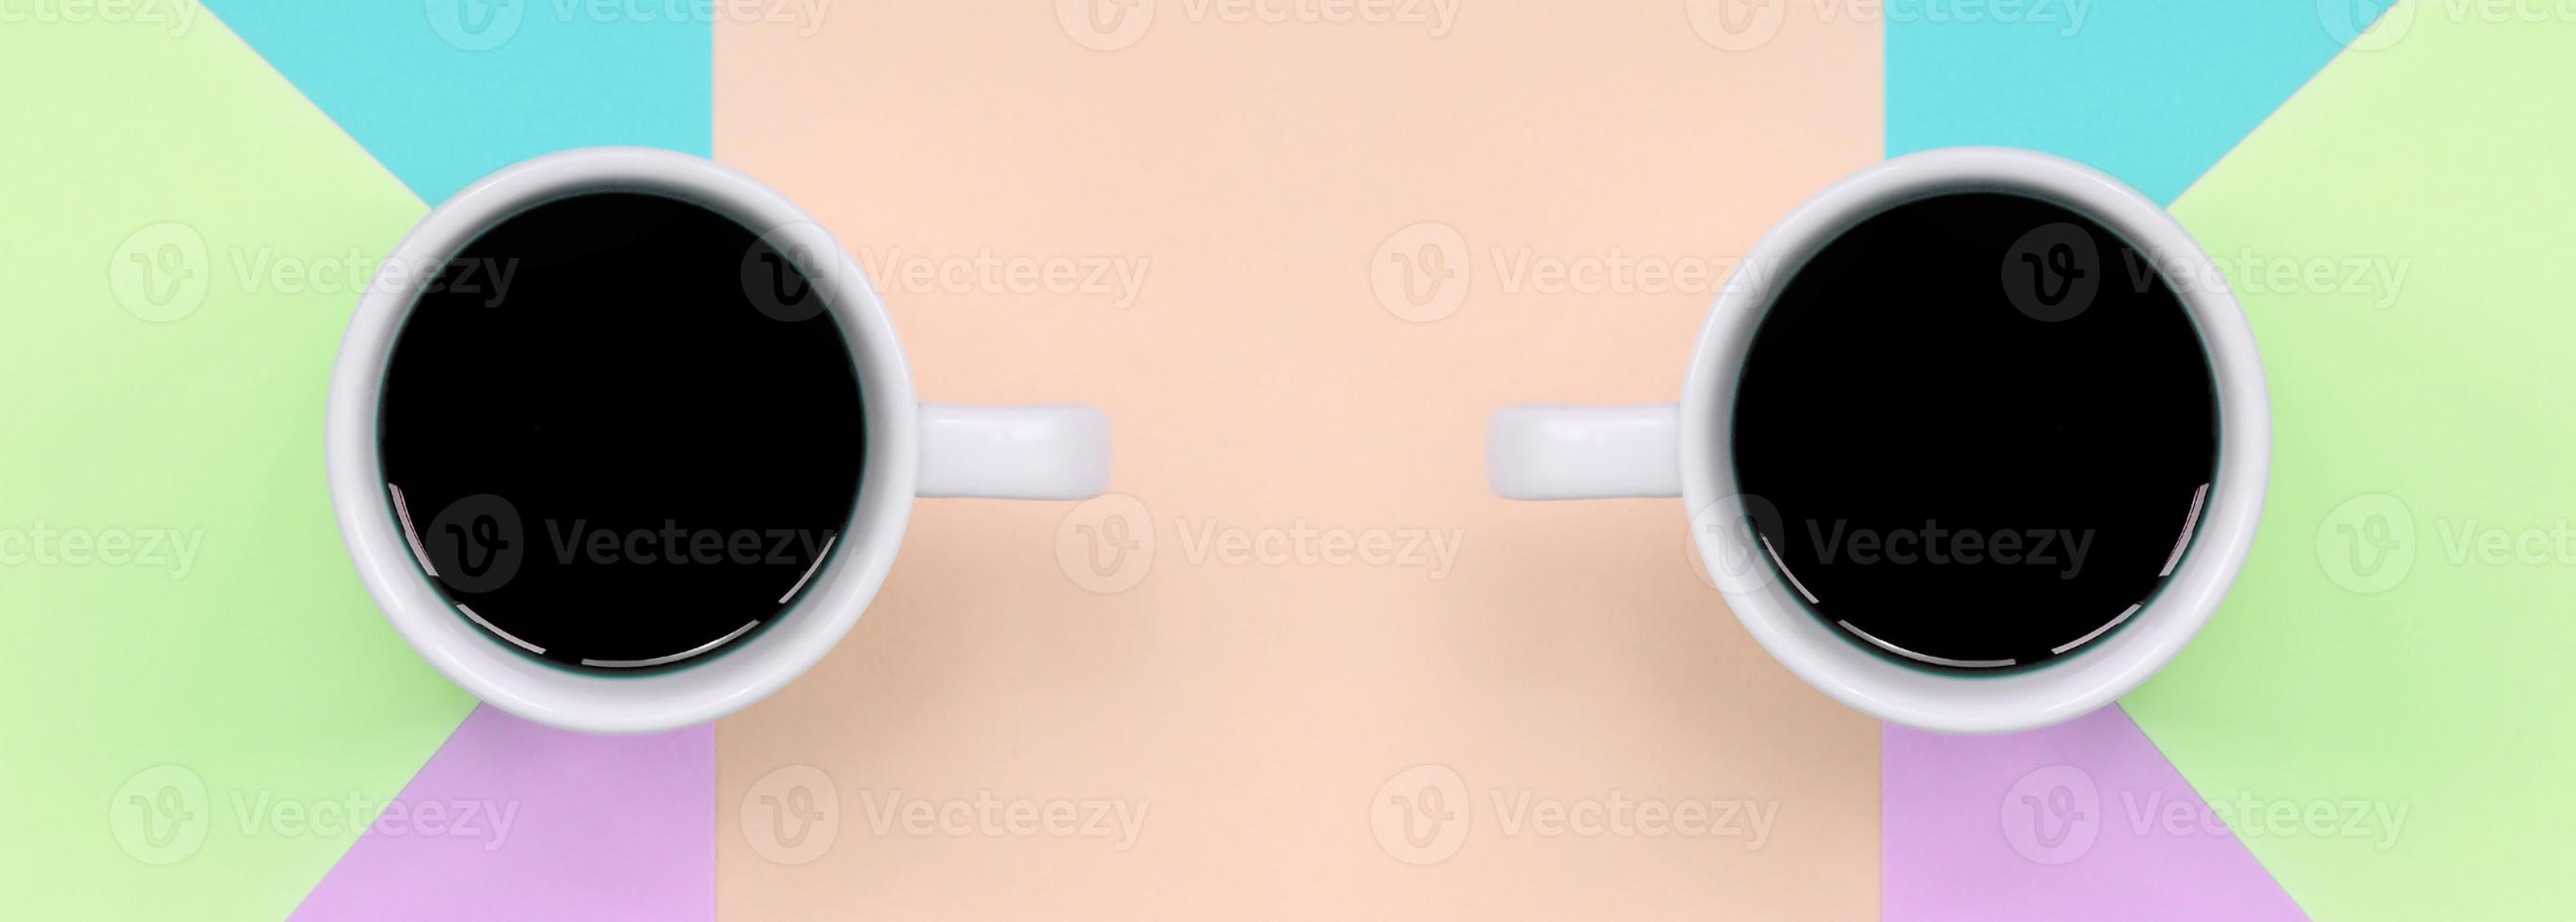 två små vit kaffe koppar på textur bakgrund av mode pastell rosa, blå, korall och kalk färger papper foto